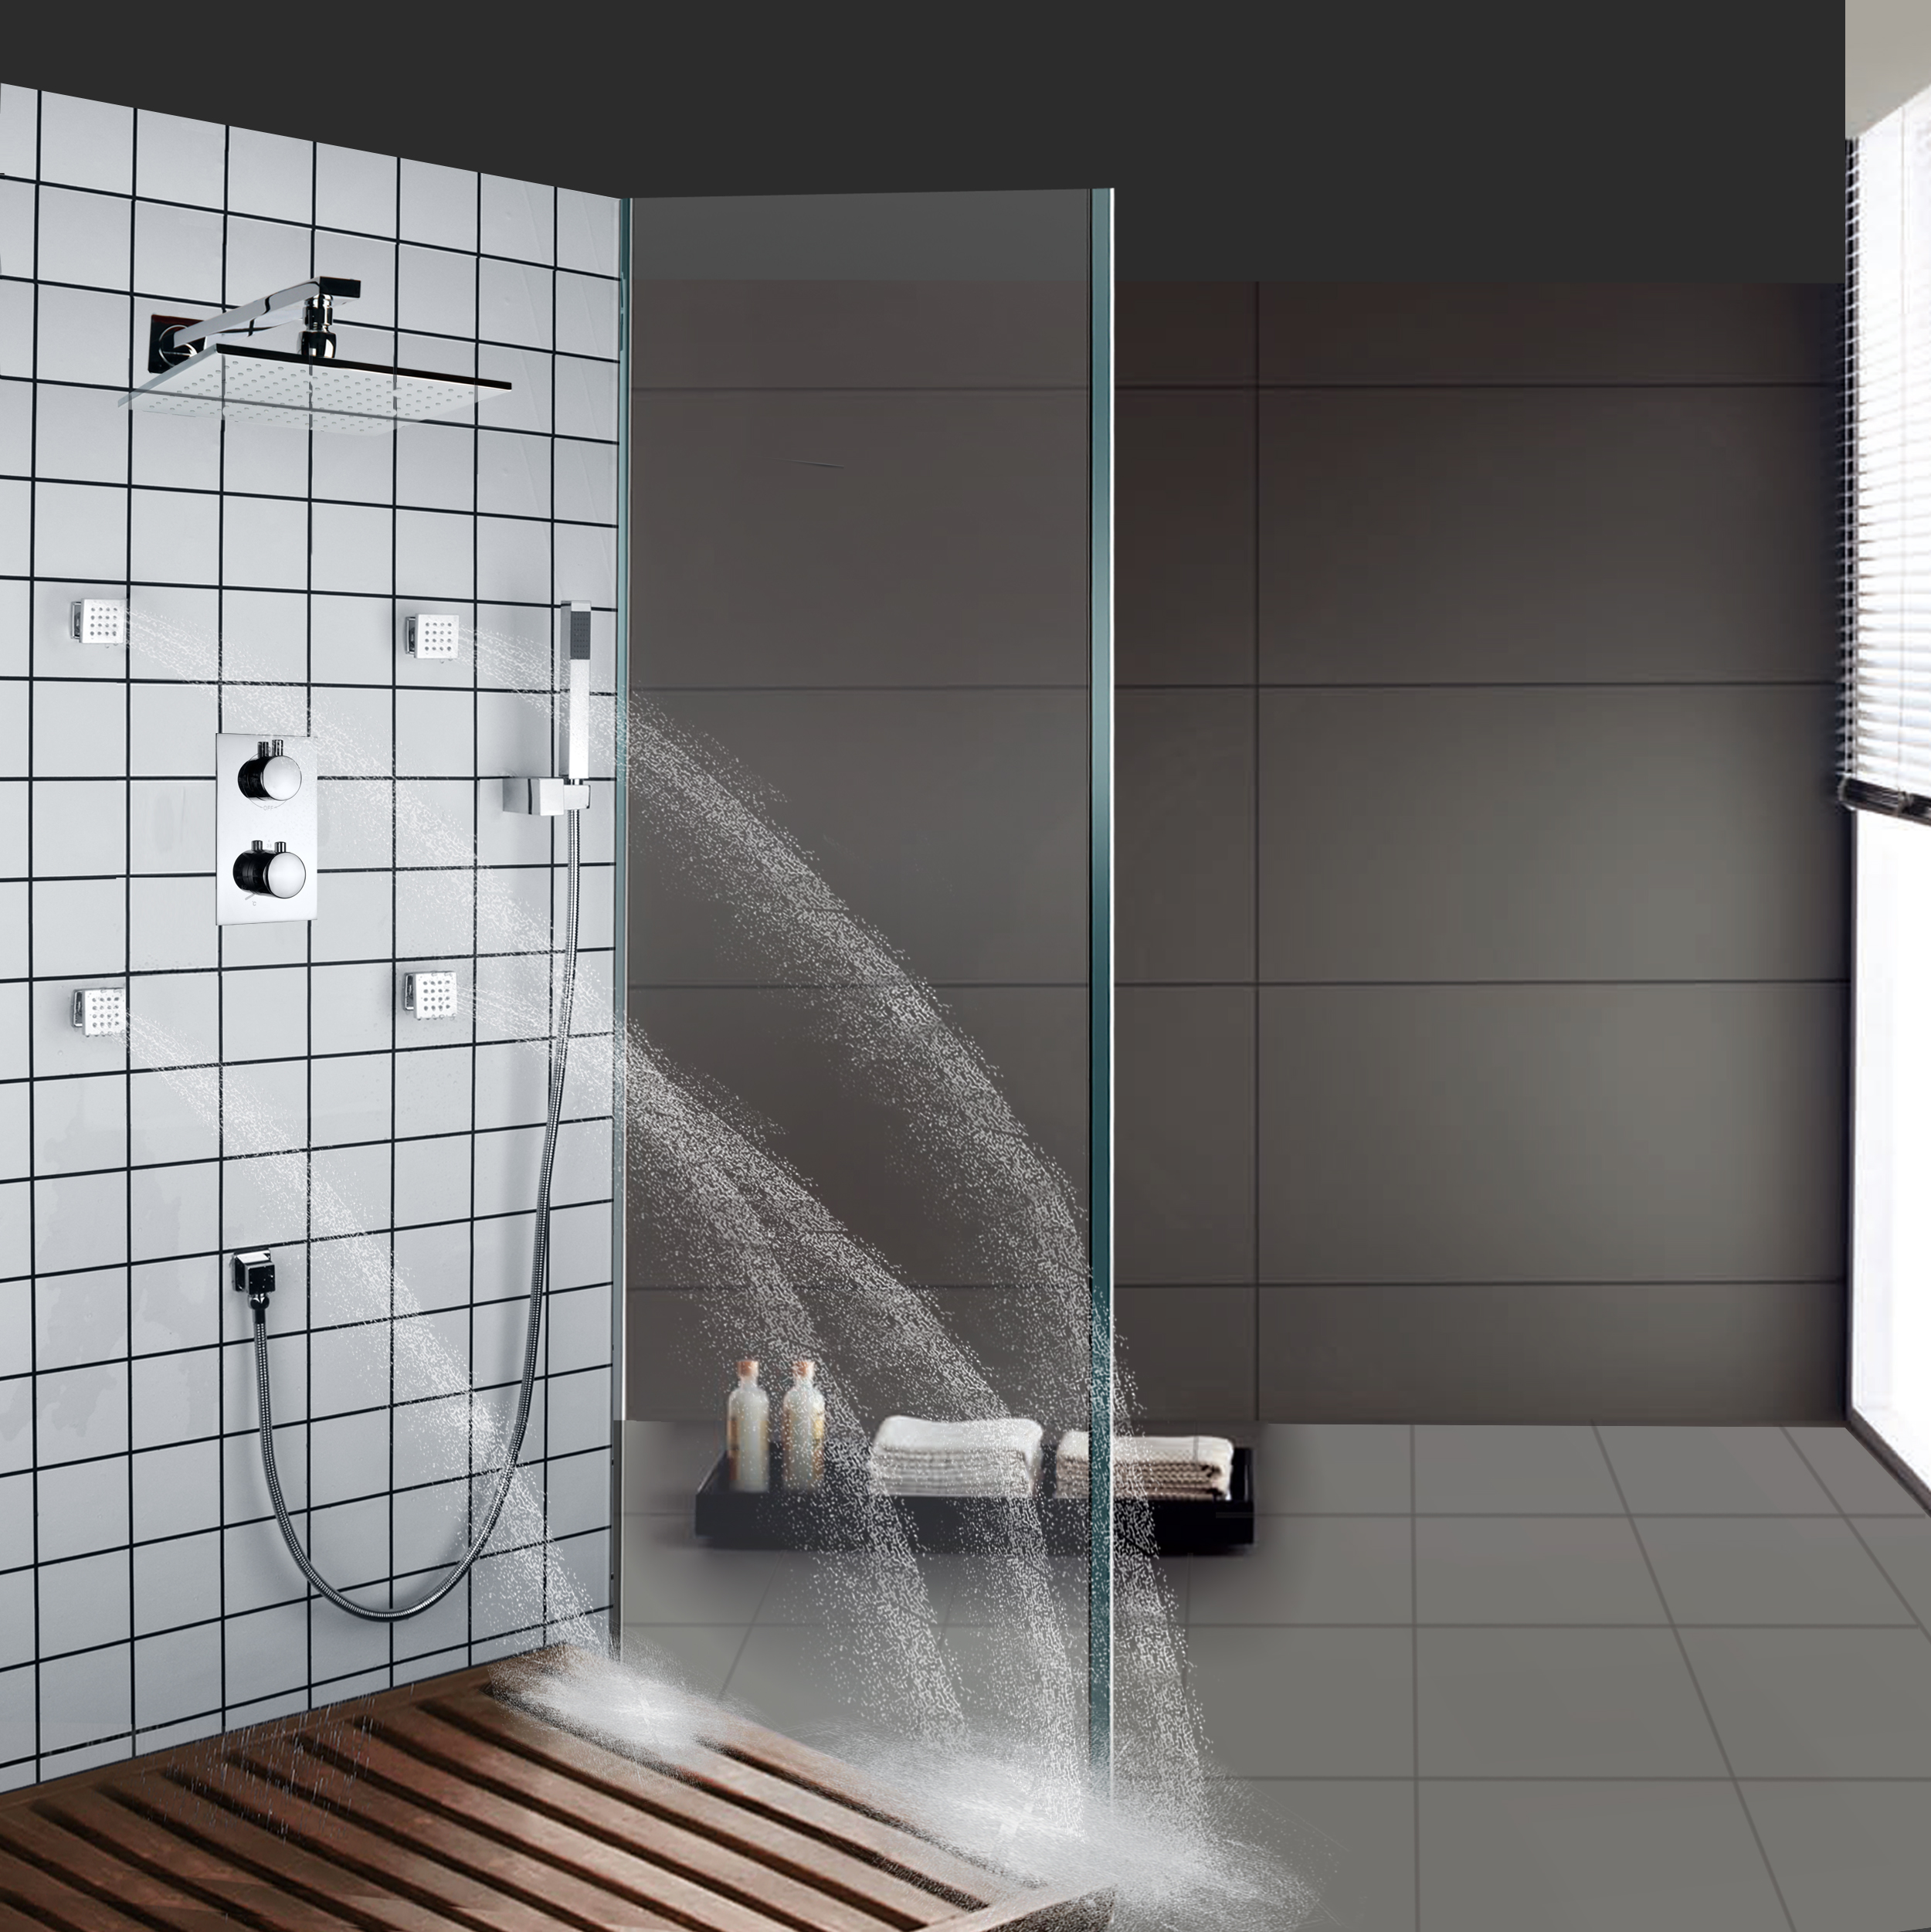 Sistema de ducha pulido cromado, juego de ducha termostática para baño, grifos de ducha tipo lluvia